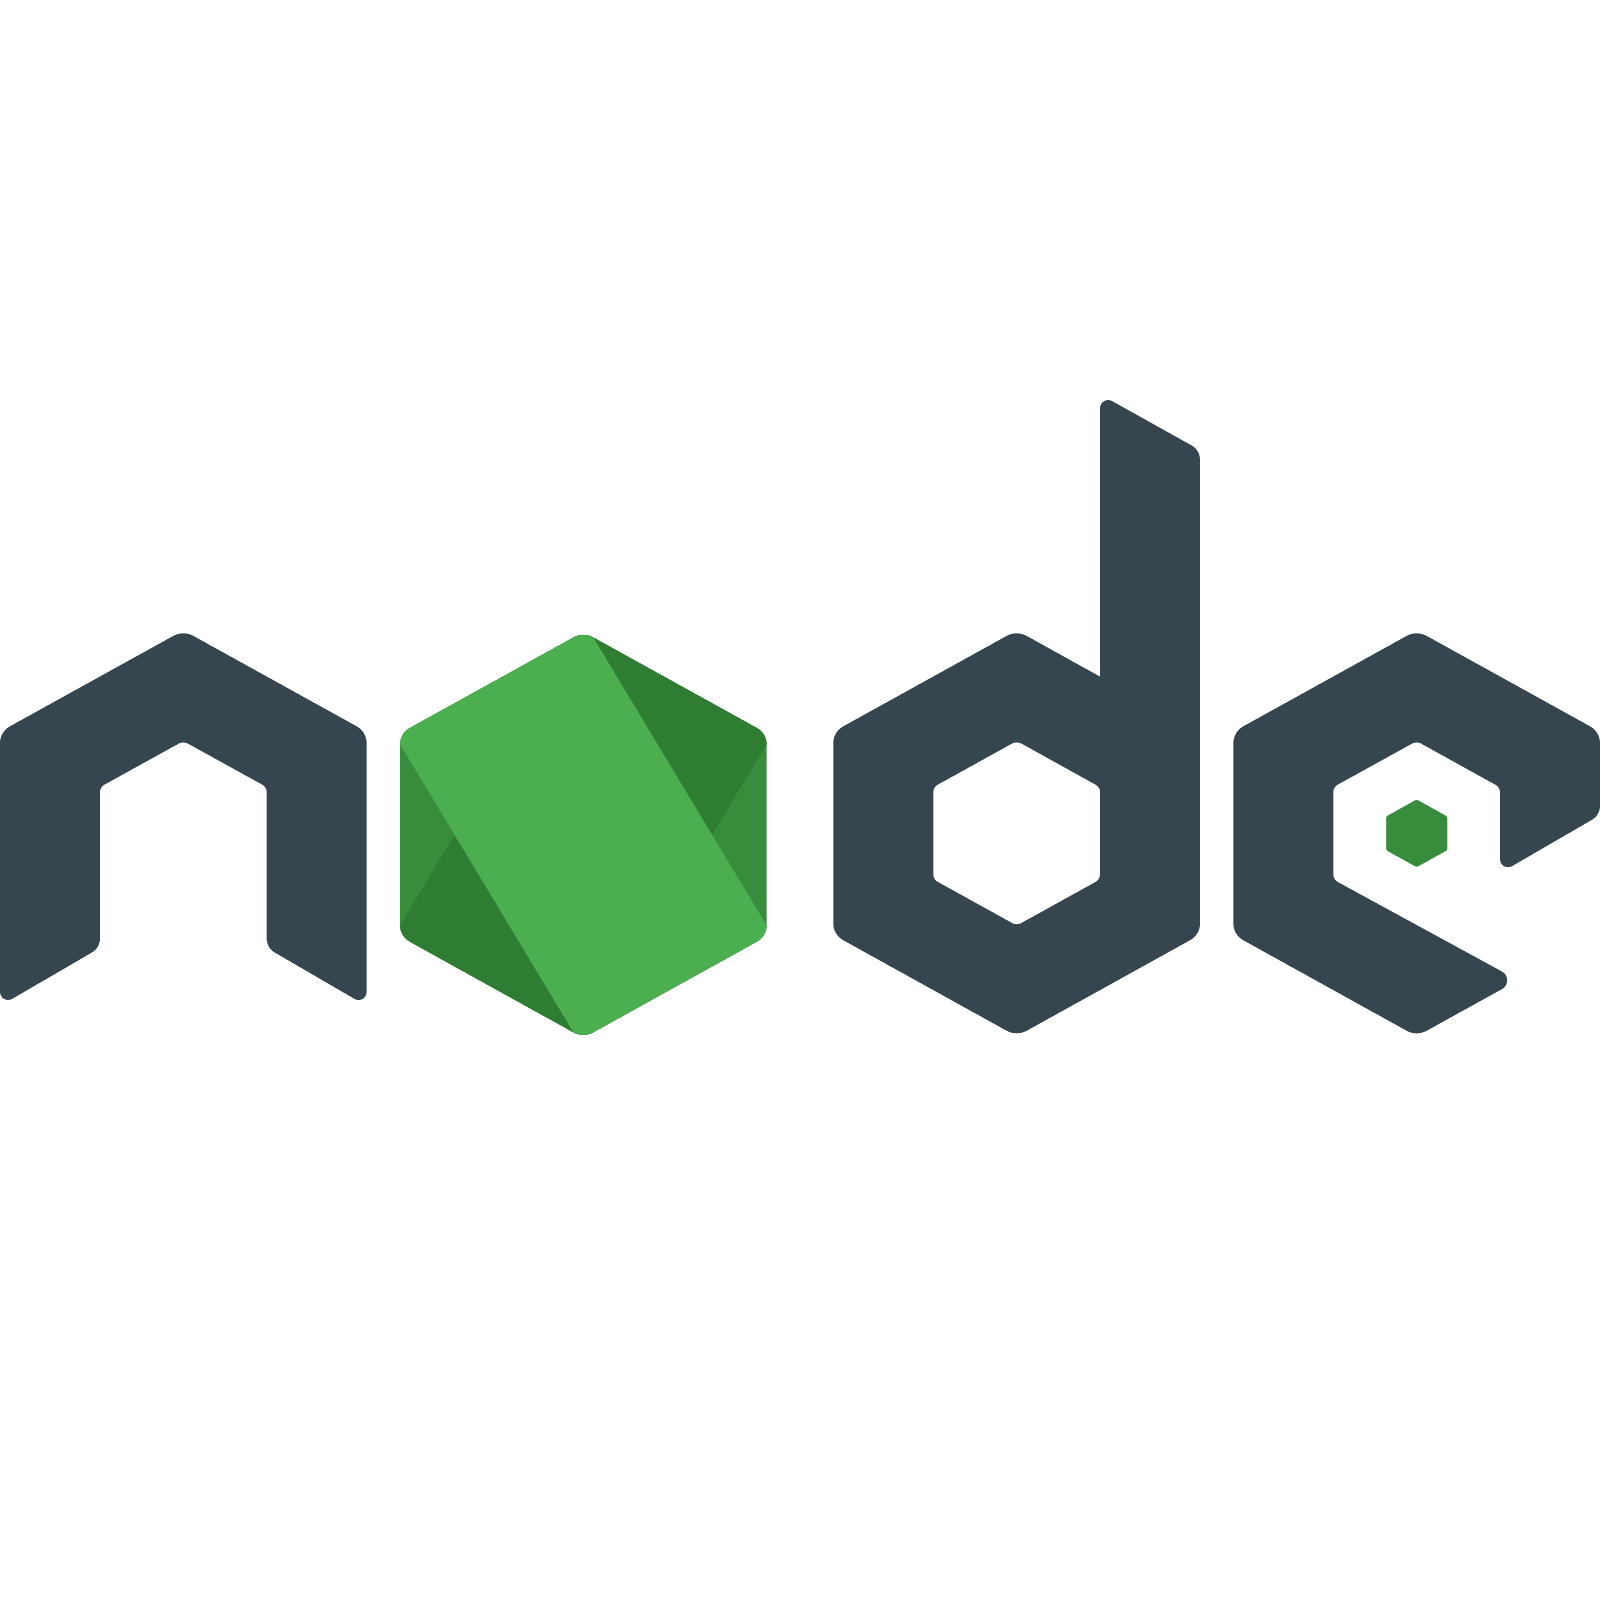 Flat js. Node js icon. Node js значок. Node js logo PNG. Последняя версия node js.